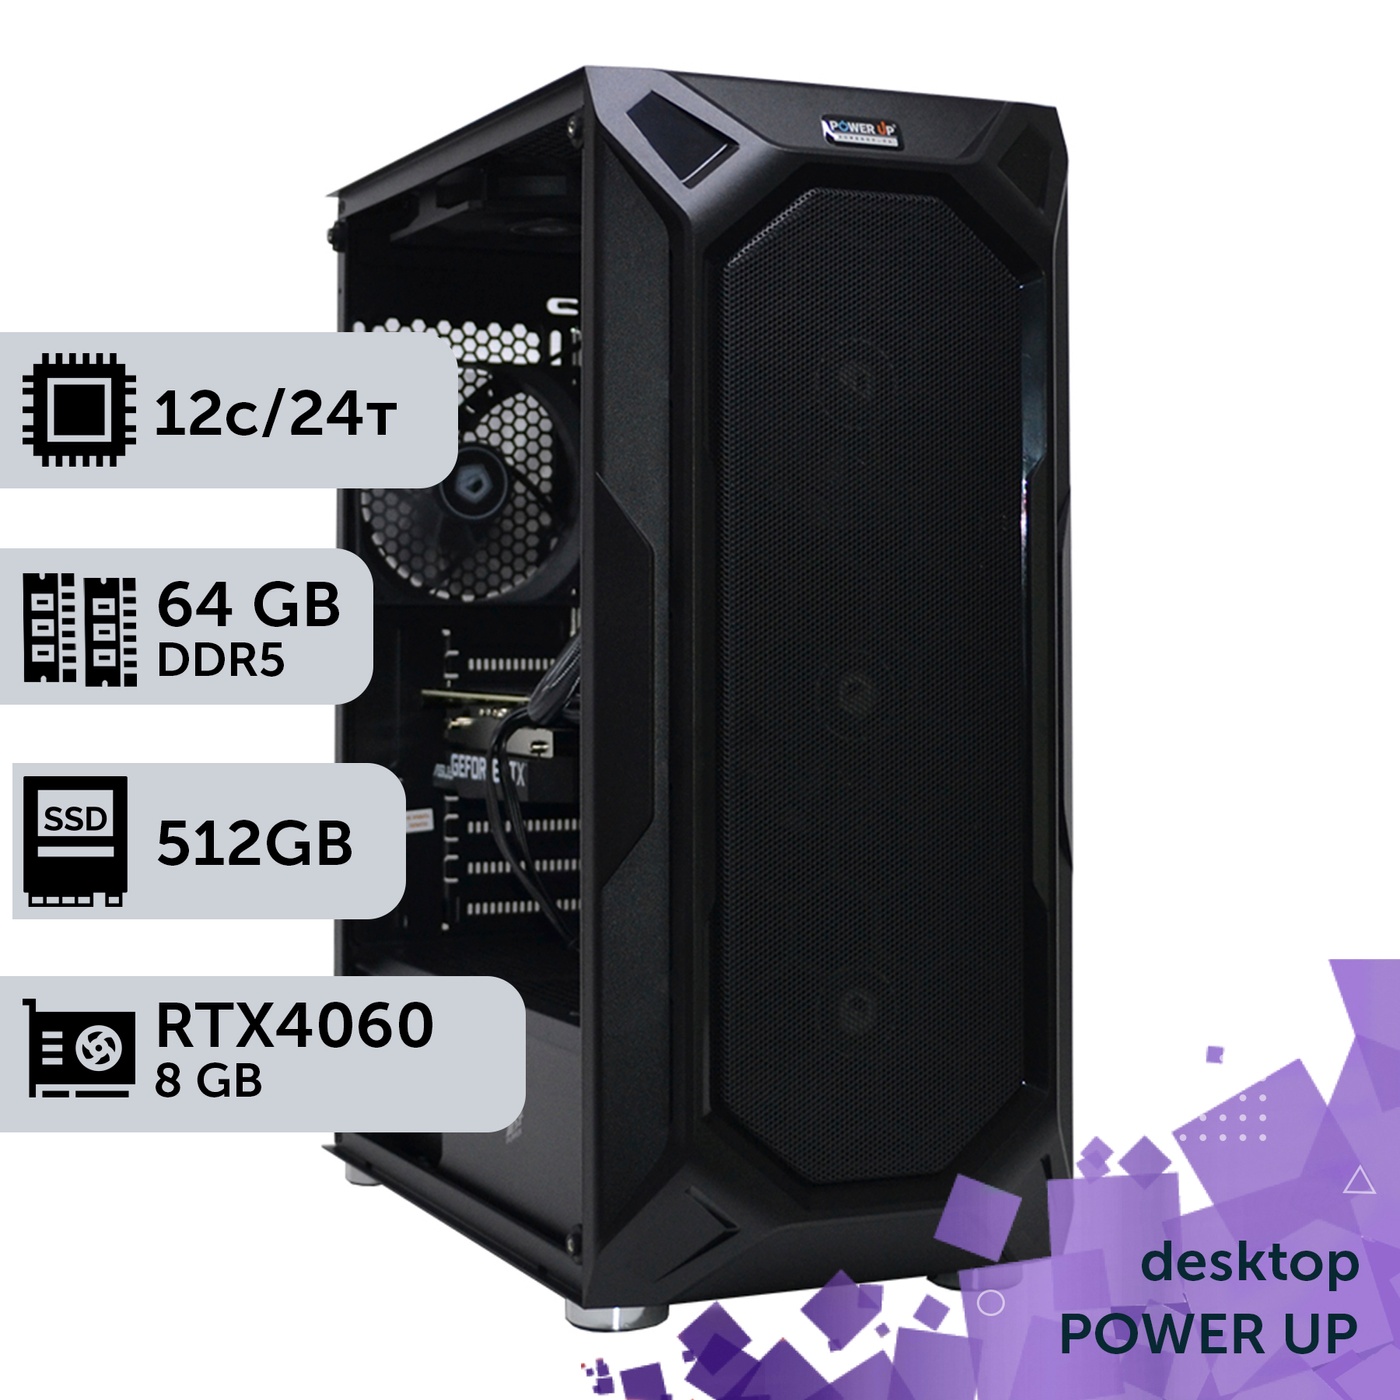 Робоча станція PowerUp Desktop #263 Ryzen 9 7900x/64 GB/SSD 512GB/GeForce RTX 4060 8GB